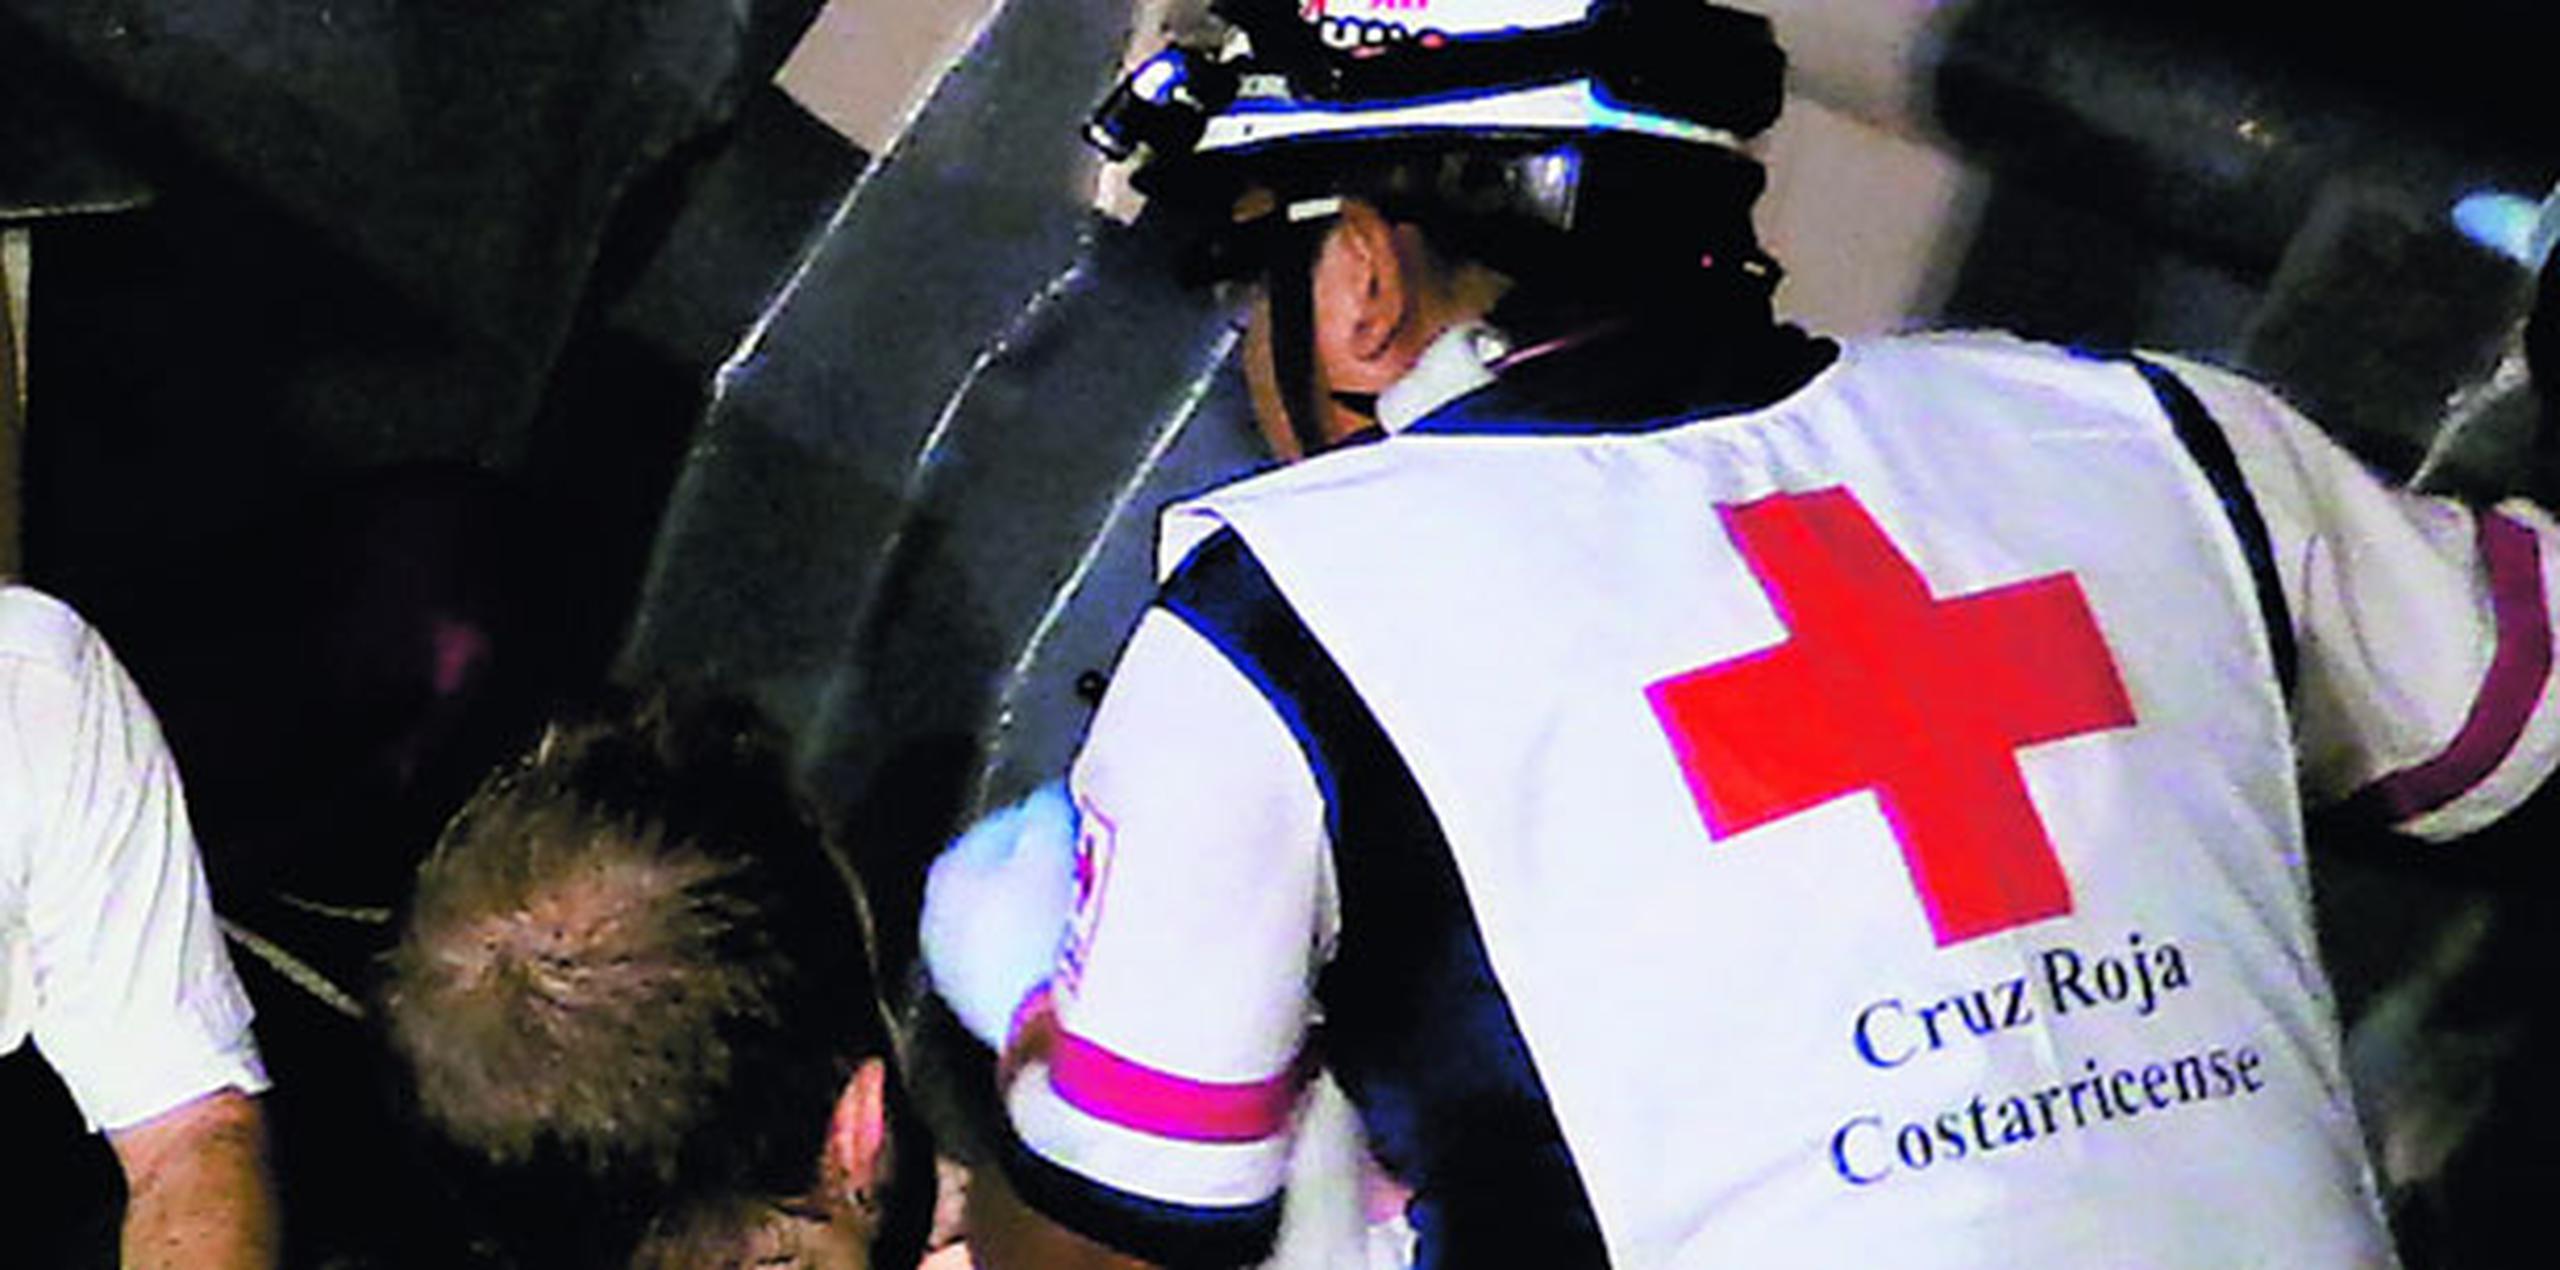 Un portavoz de la Cruz Roja dijo a Efe que los socorristas han comenzado los trabajos de rescate de los pasajeros y que hasta el momento se tiene el reporte de al menos seis personas en condición roja (grave). (Archivo)